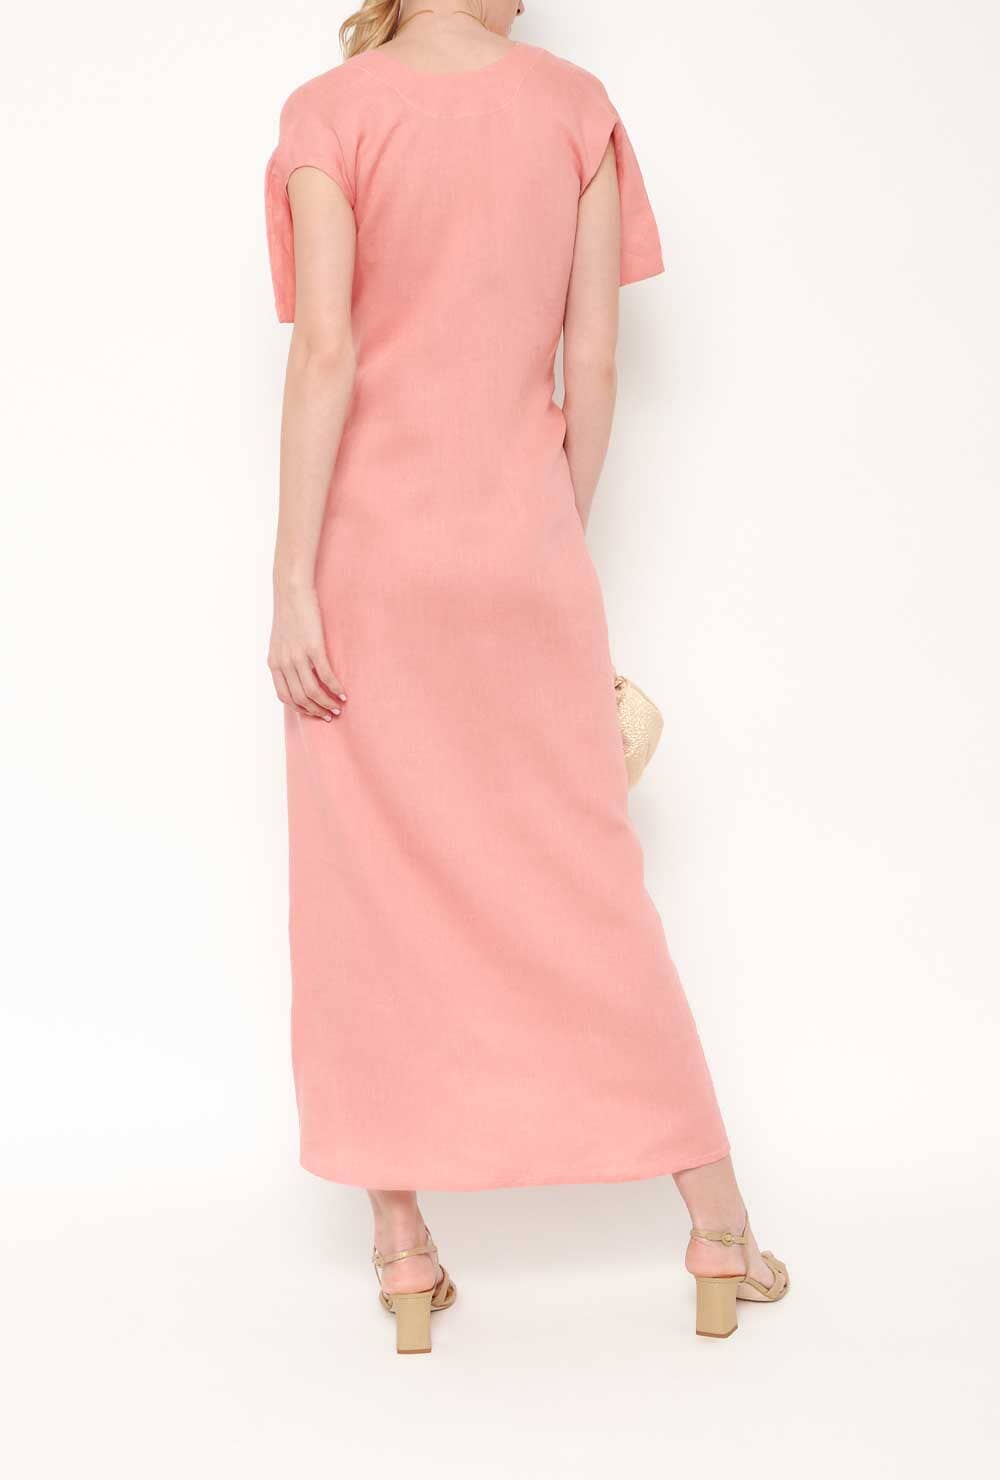 Uga Dress Pink Dresses Alava Brand 